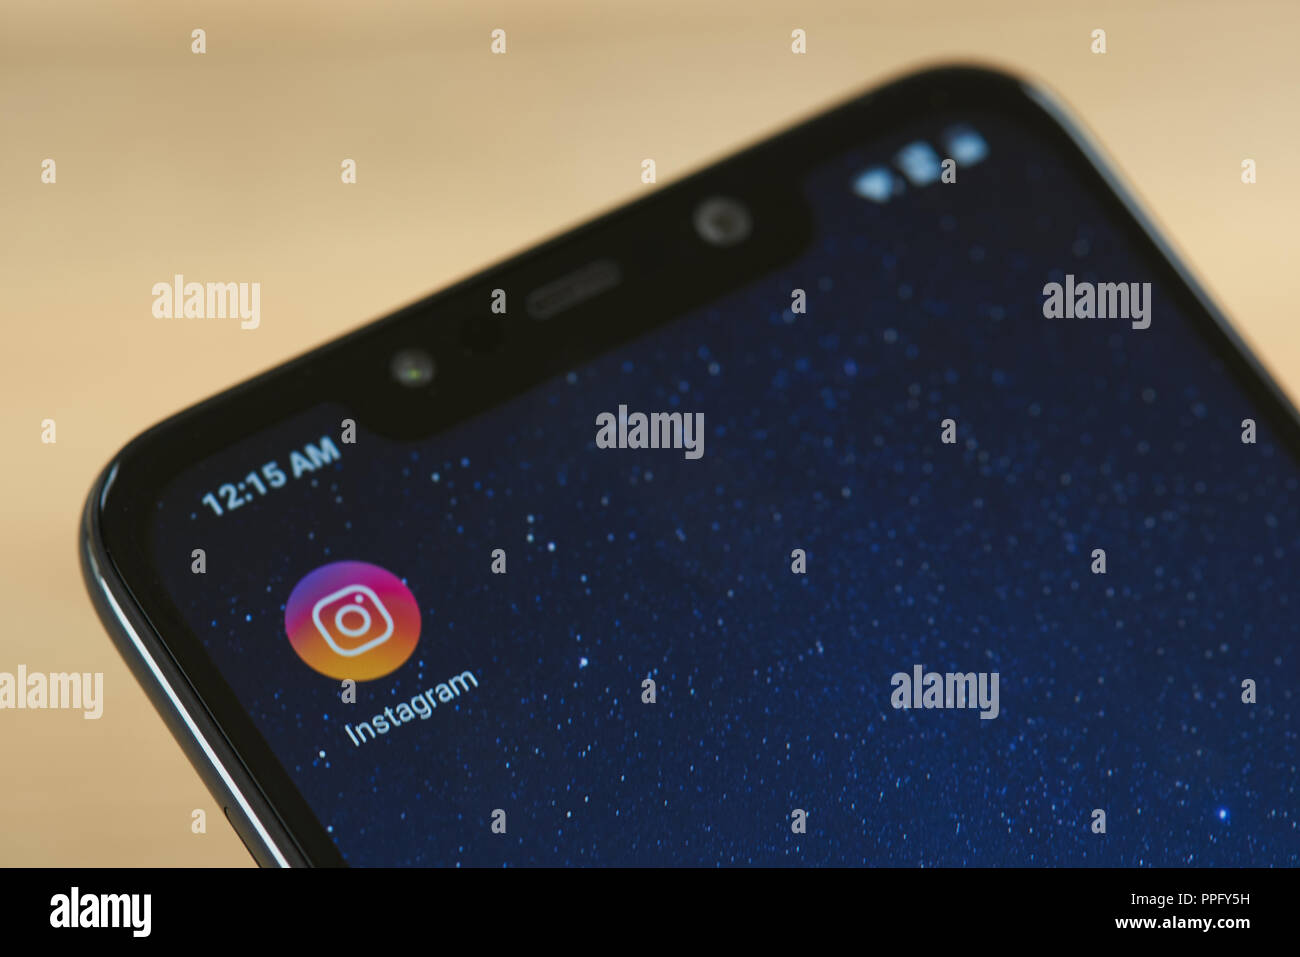 New York, USA - 24 septembre 2018 : Une icône sur l'écran du smartphone Instagram close up Banque D'Images